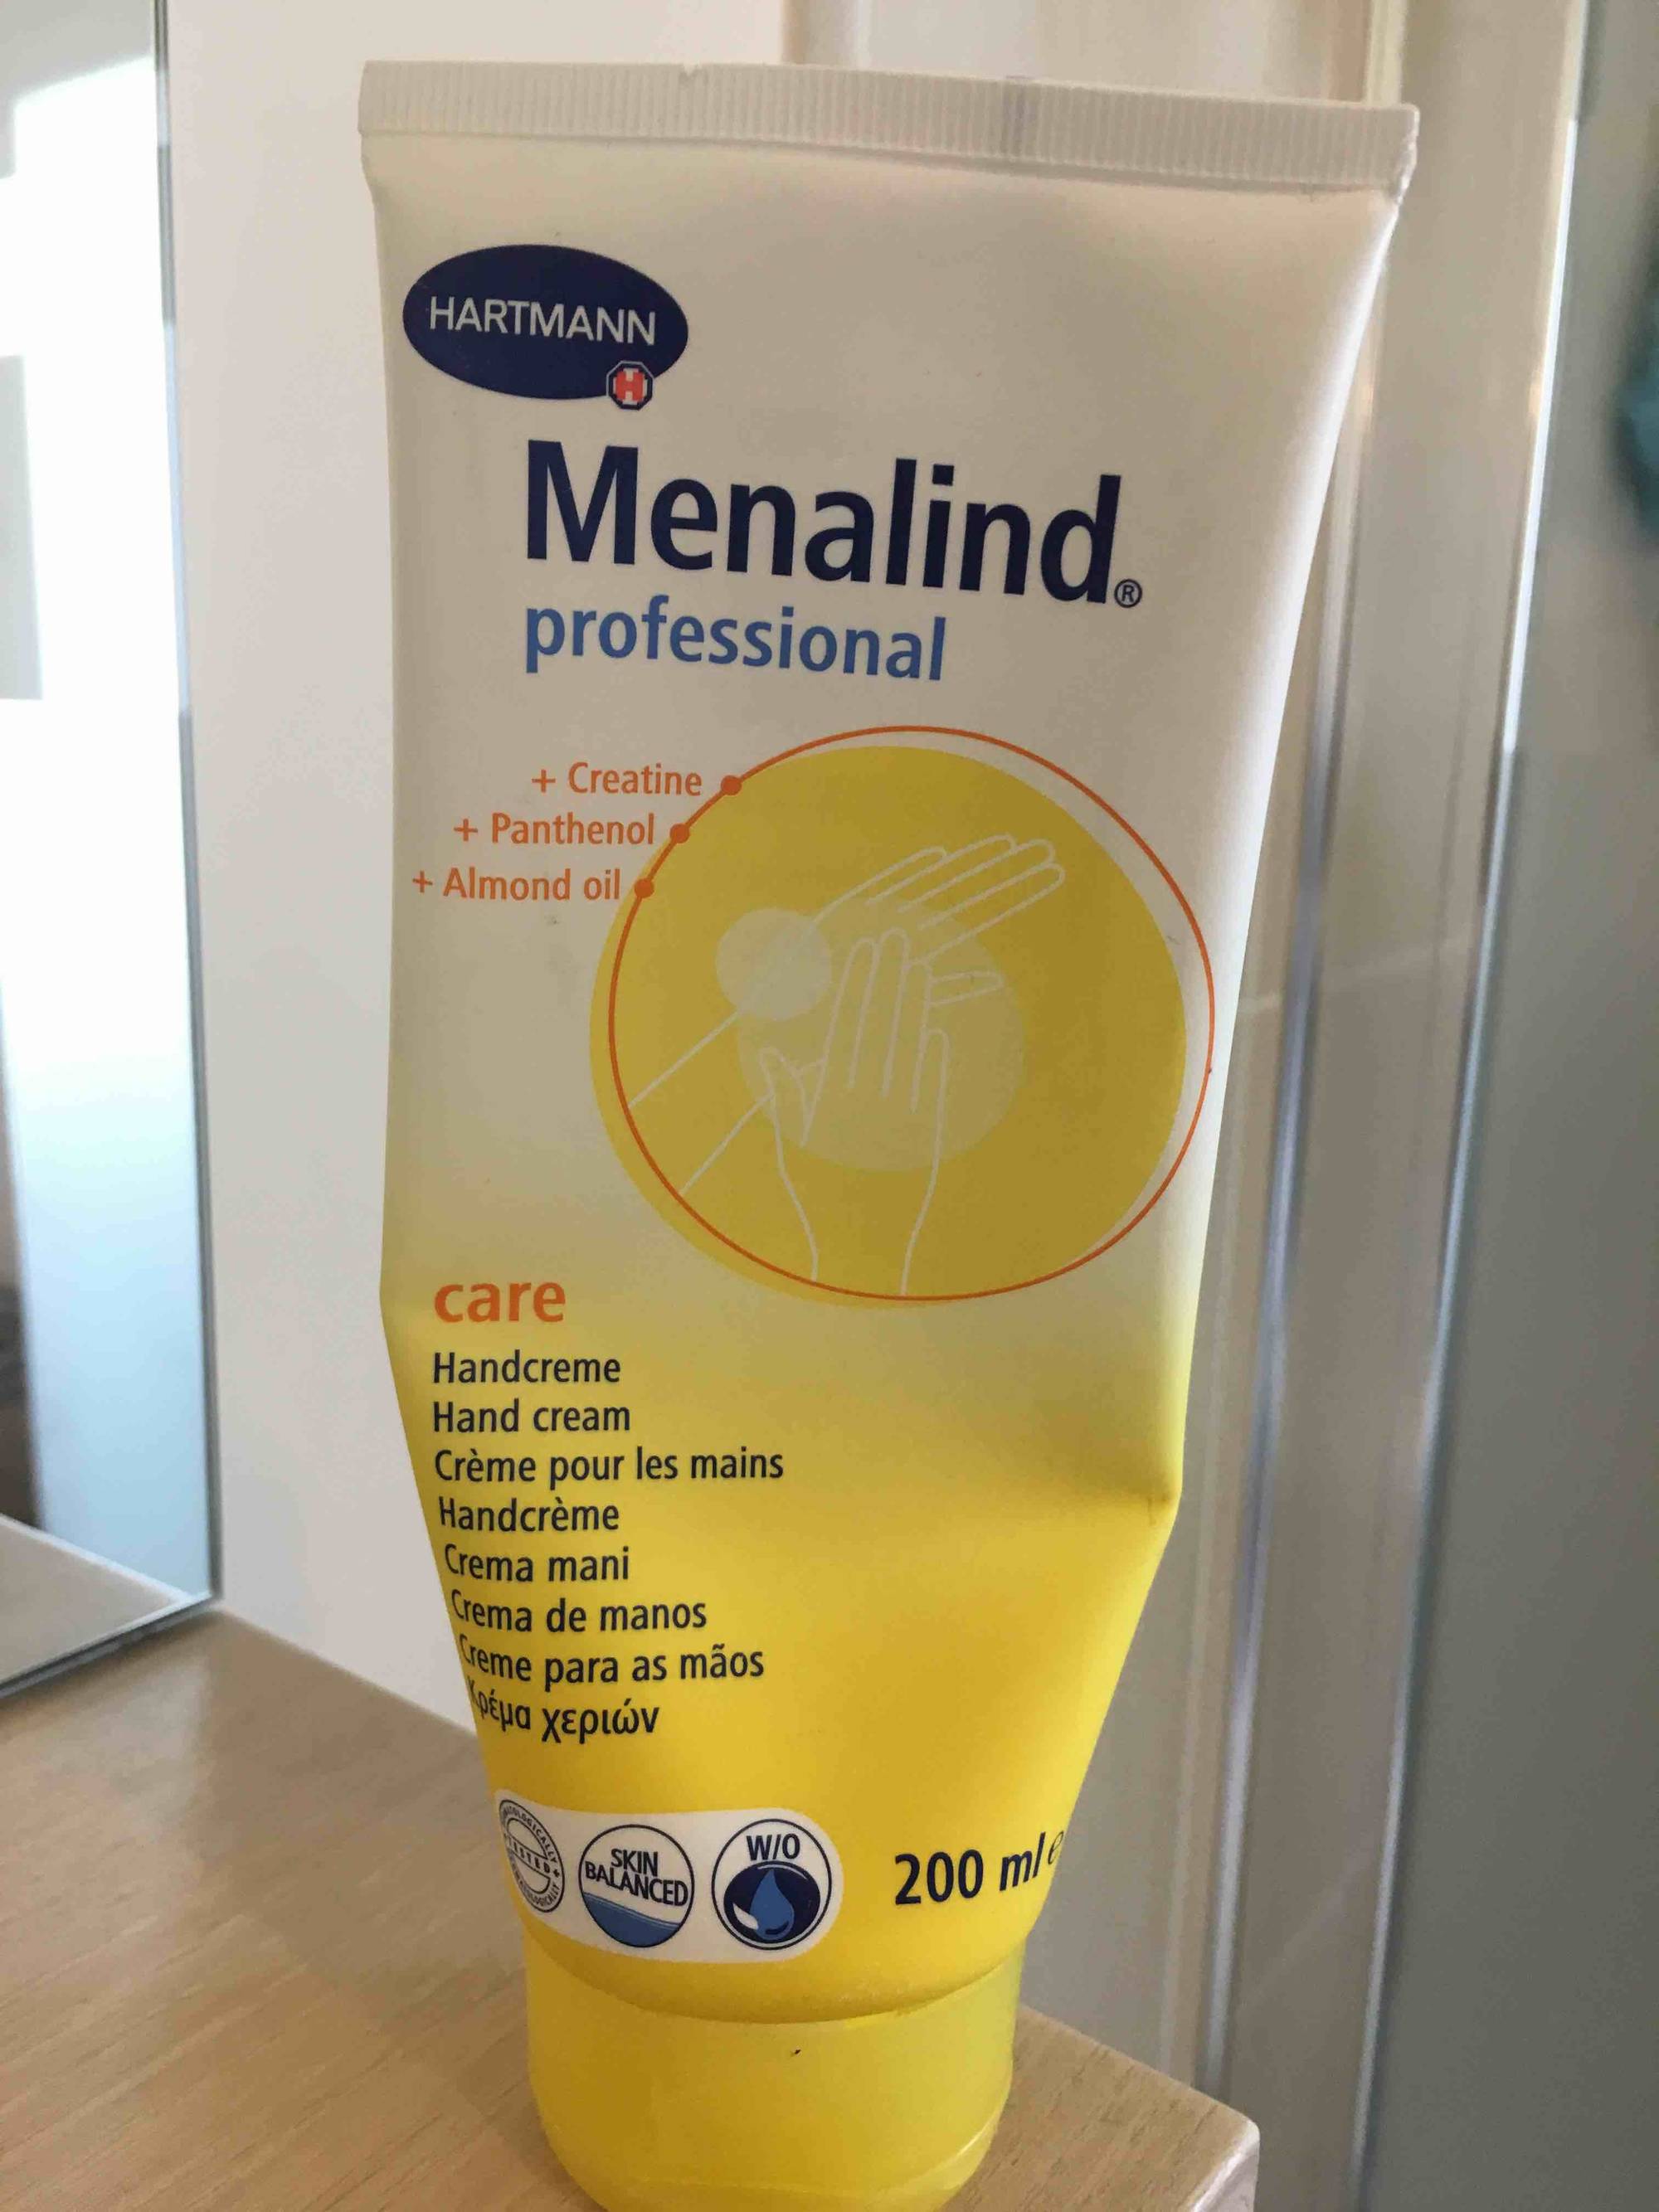 HARTMANN - Menalind professional - Crème pour les mains